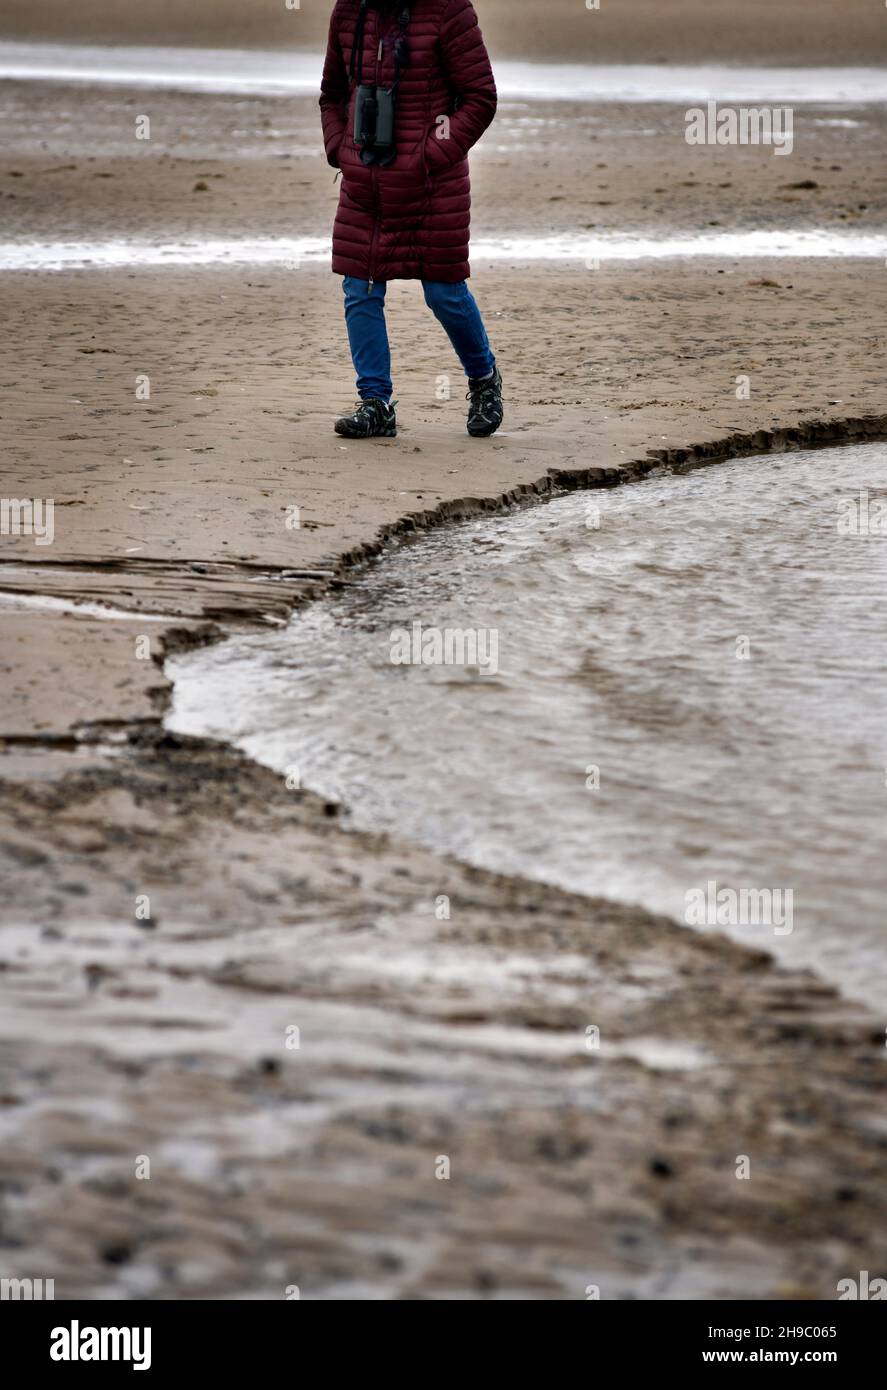 persona solidaria caminando por la playa holme-net-the-sea norfolk england Foto de stock